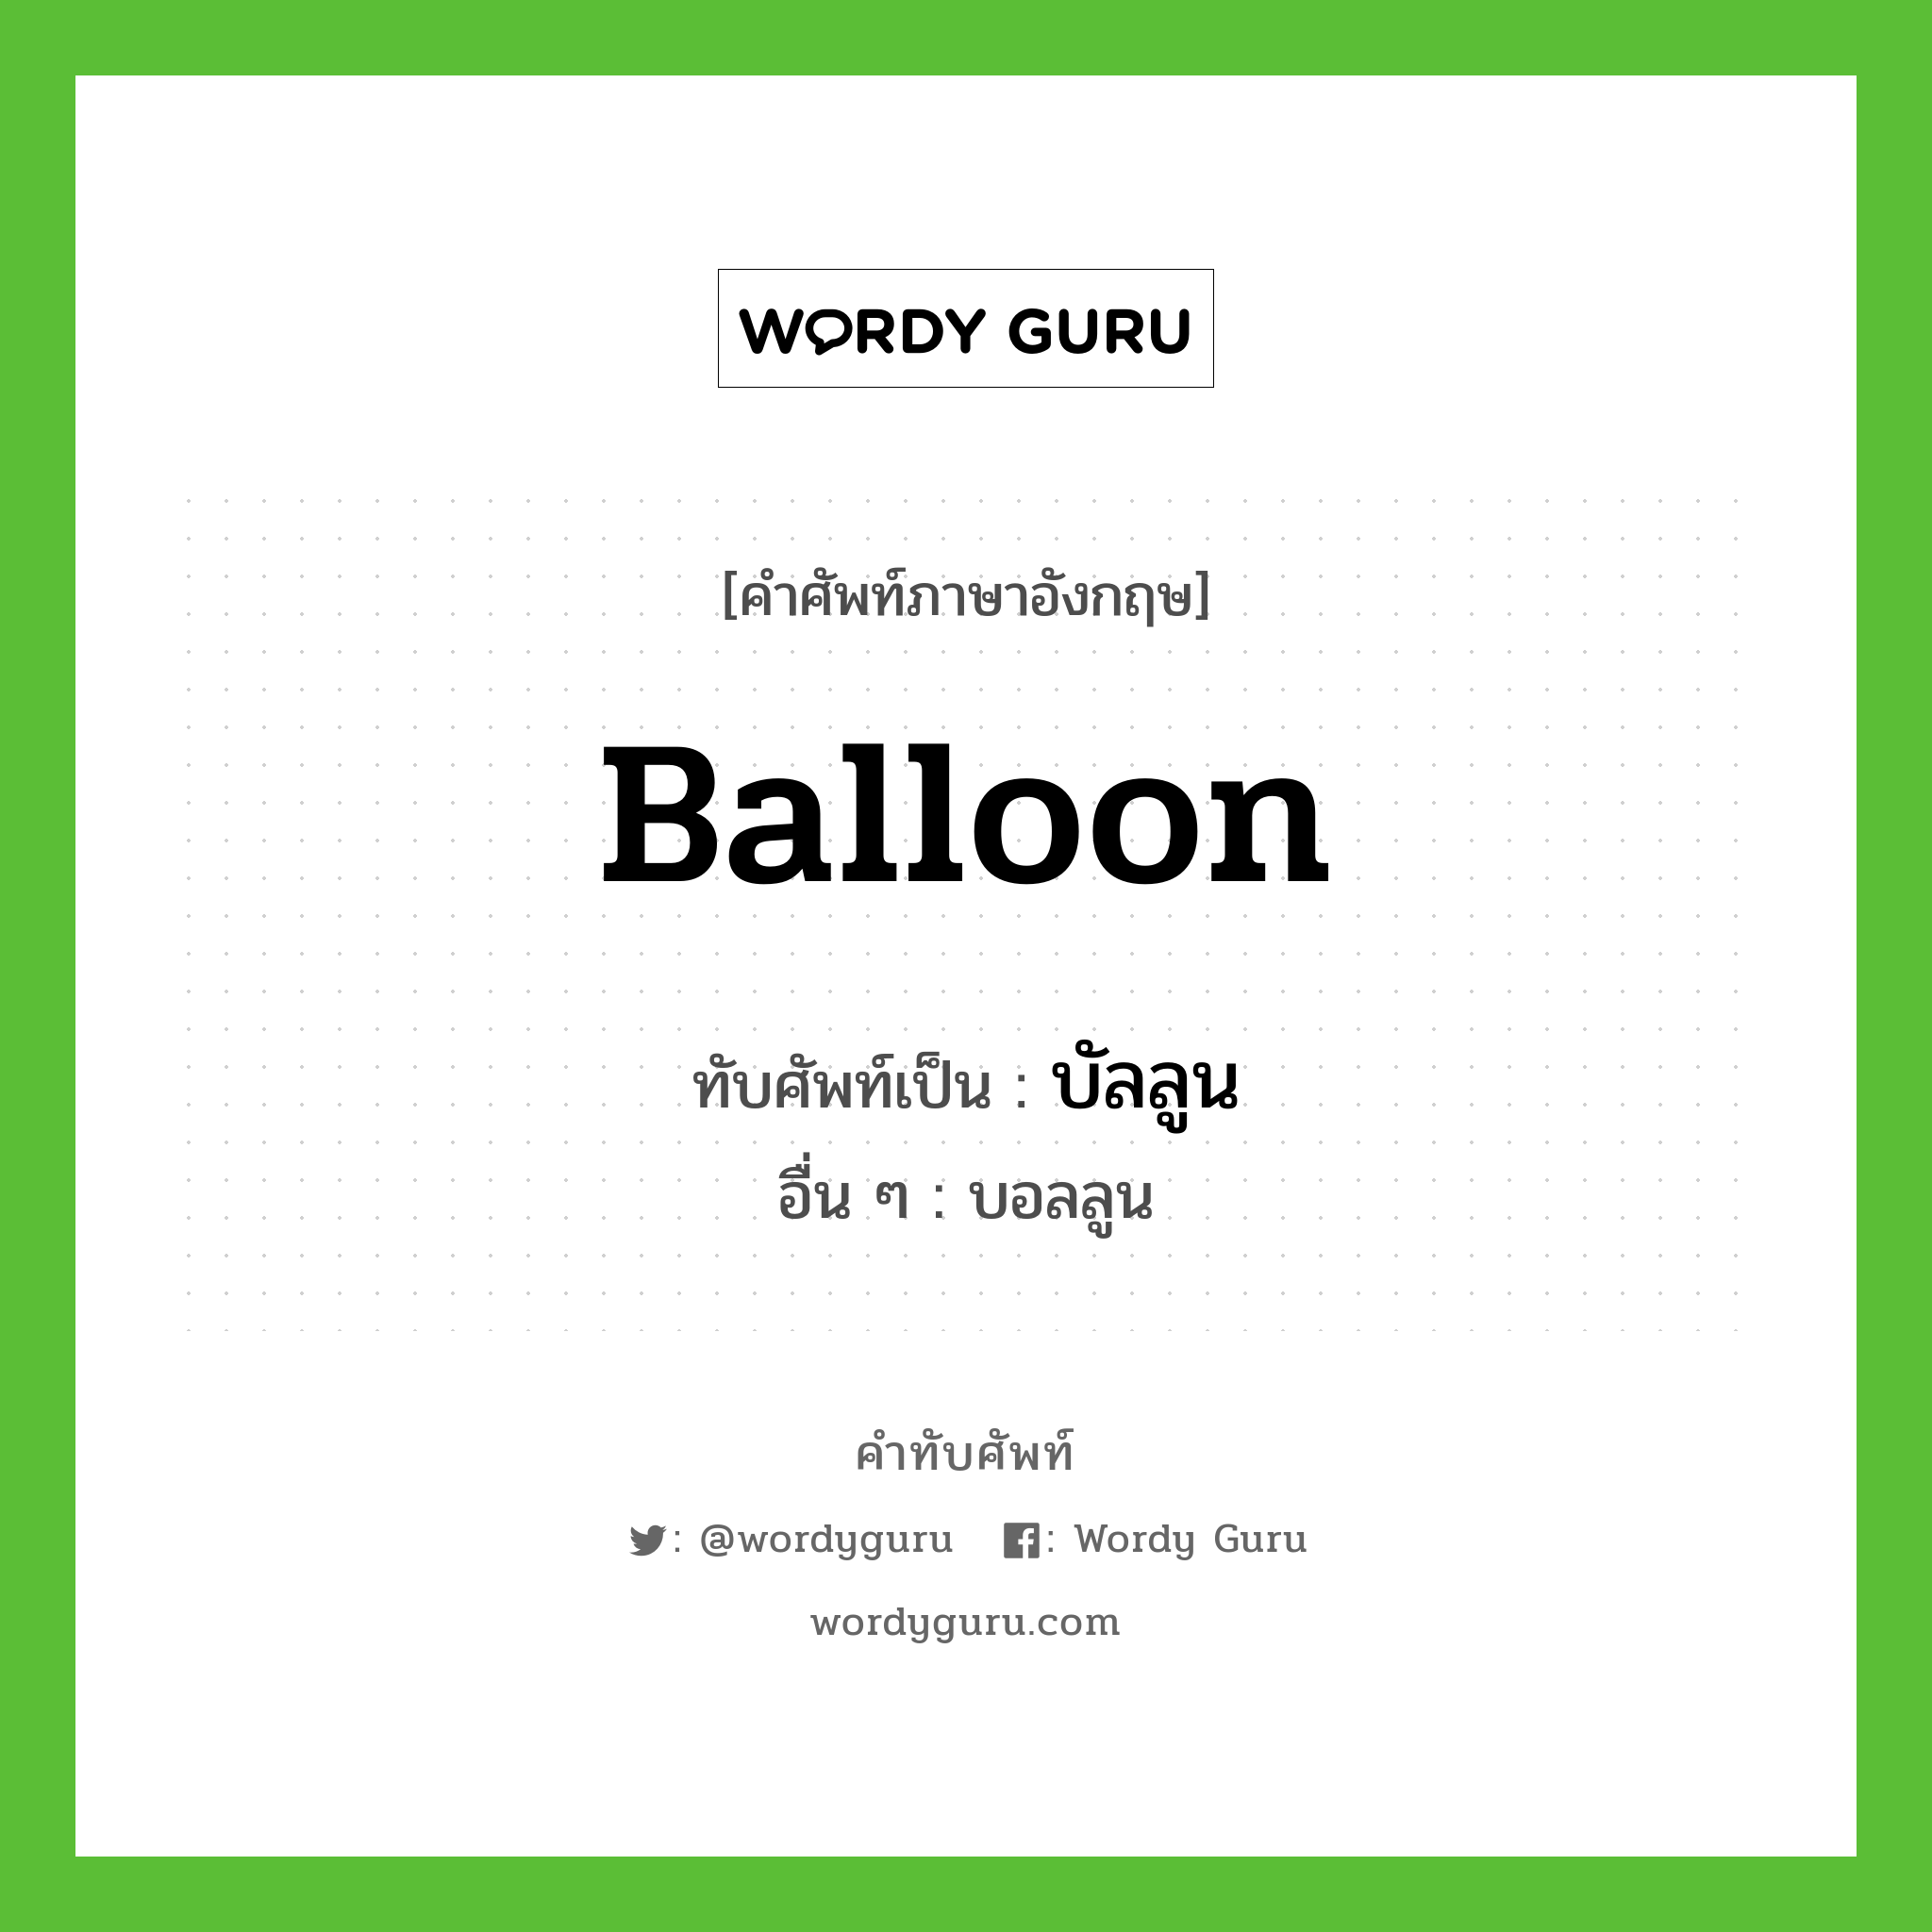 บัลลูน เขียนอย่างไร?, คำศัพท์ภาษาอังกฤษ บัลลูน ทับศัพท์เป็น balloon อื่น ๆ บอลลูน